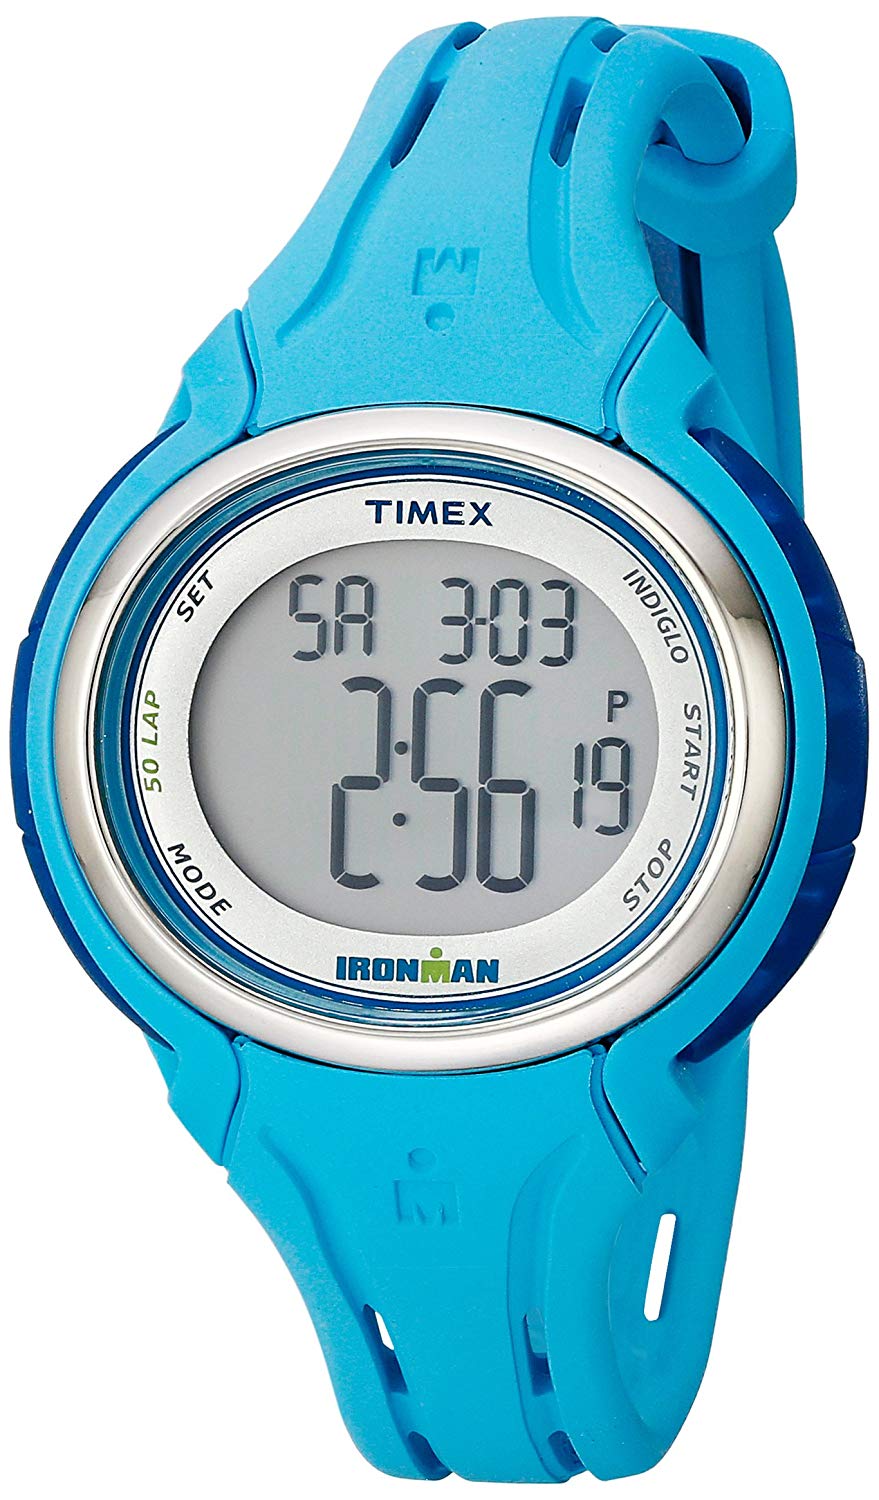 Timex Corporation Timex TW5K906009J Ironman Sleek 50 montre bracelet en silicone bleu piscine pour femme